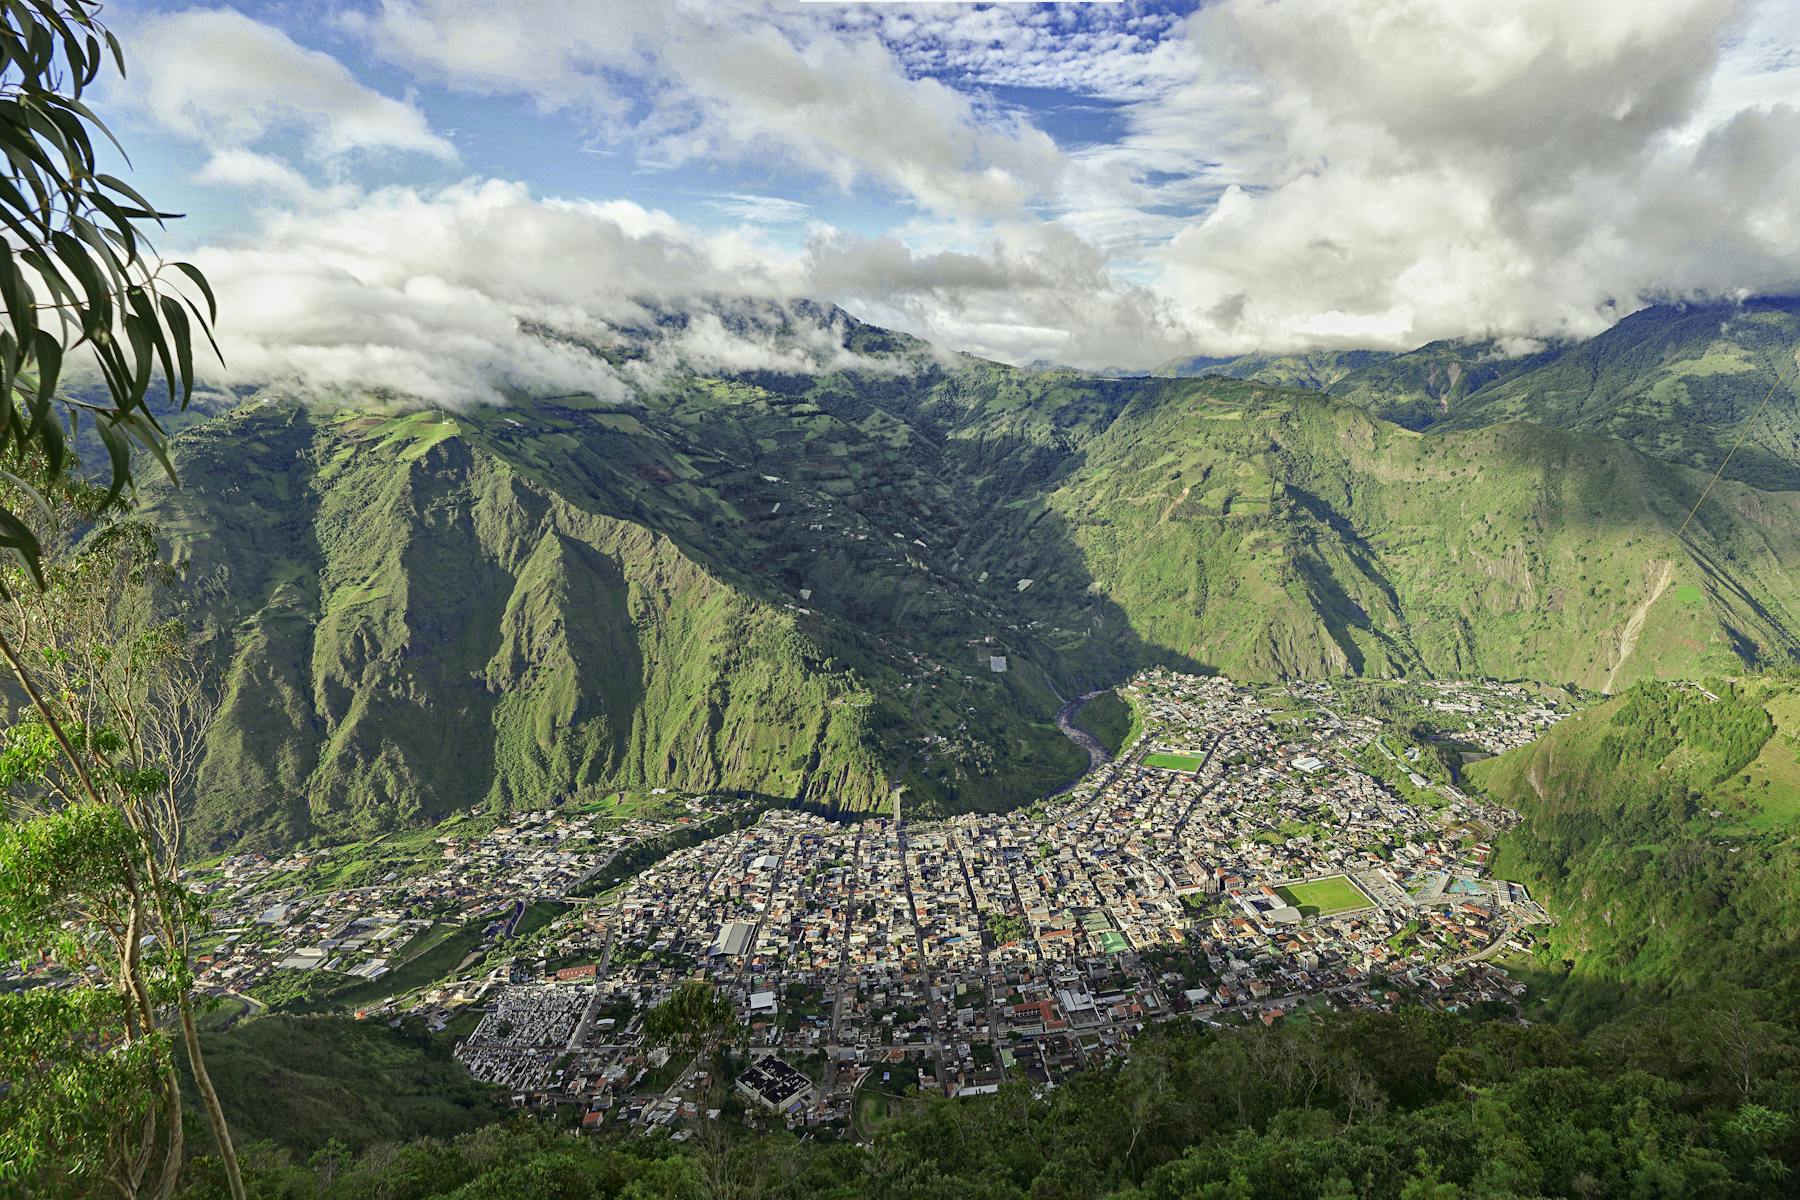 столица эквадора